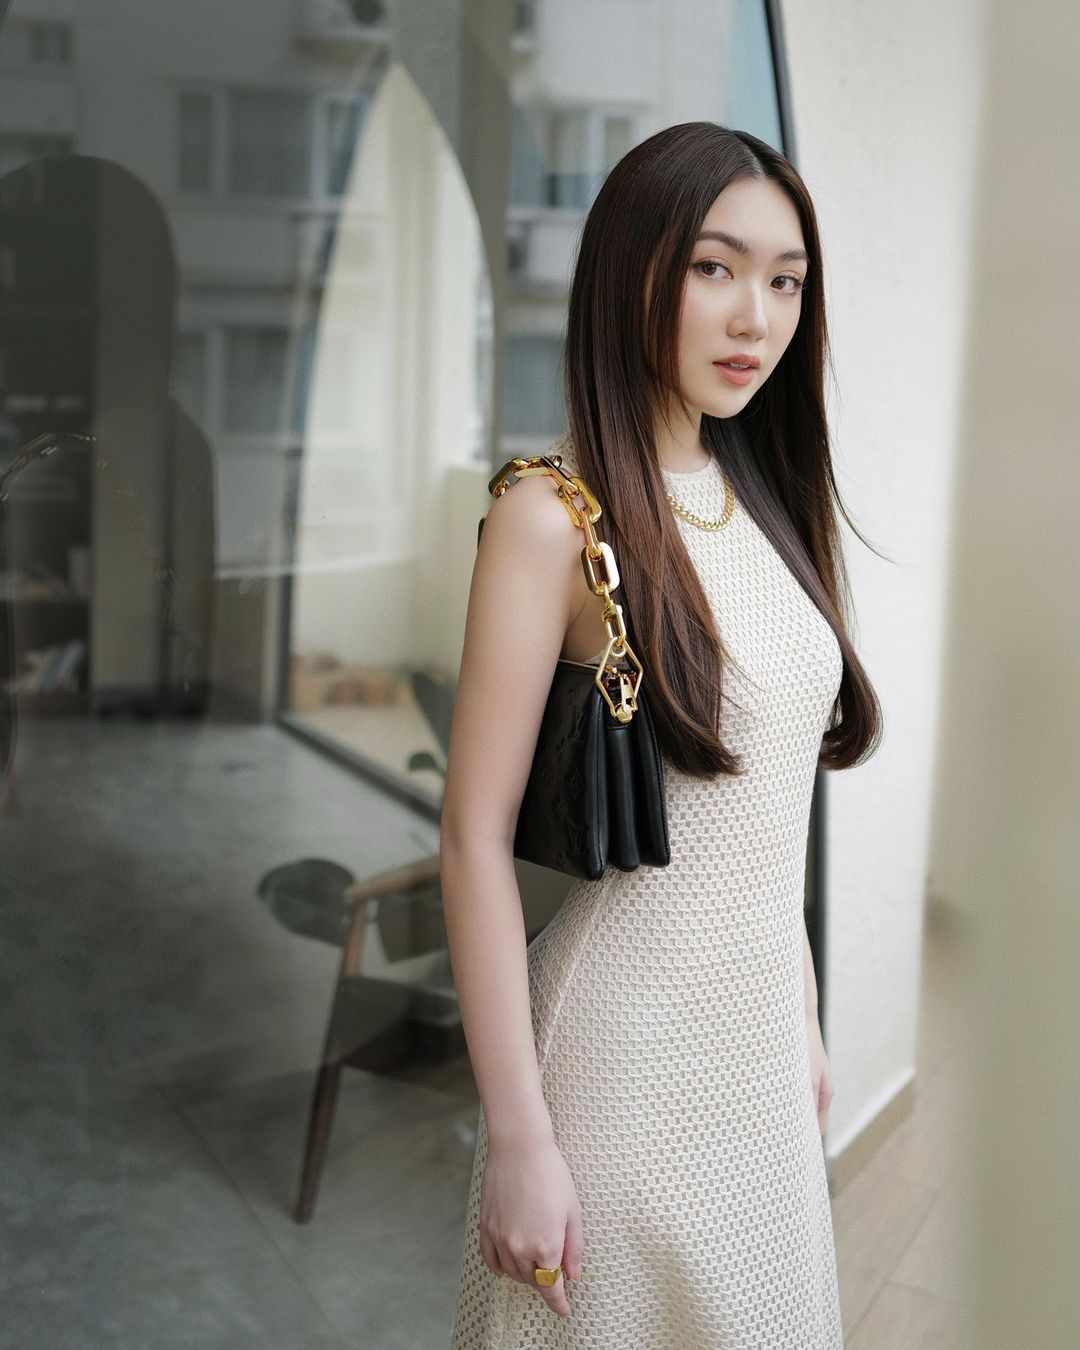 Khi diện những trang phục đơn giản, Chloe Nguyễn thường biết tạo điểm nhấn bằng phụ kiện như túi, vòng cổ để tổng thể không bị nhàm chán.